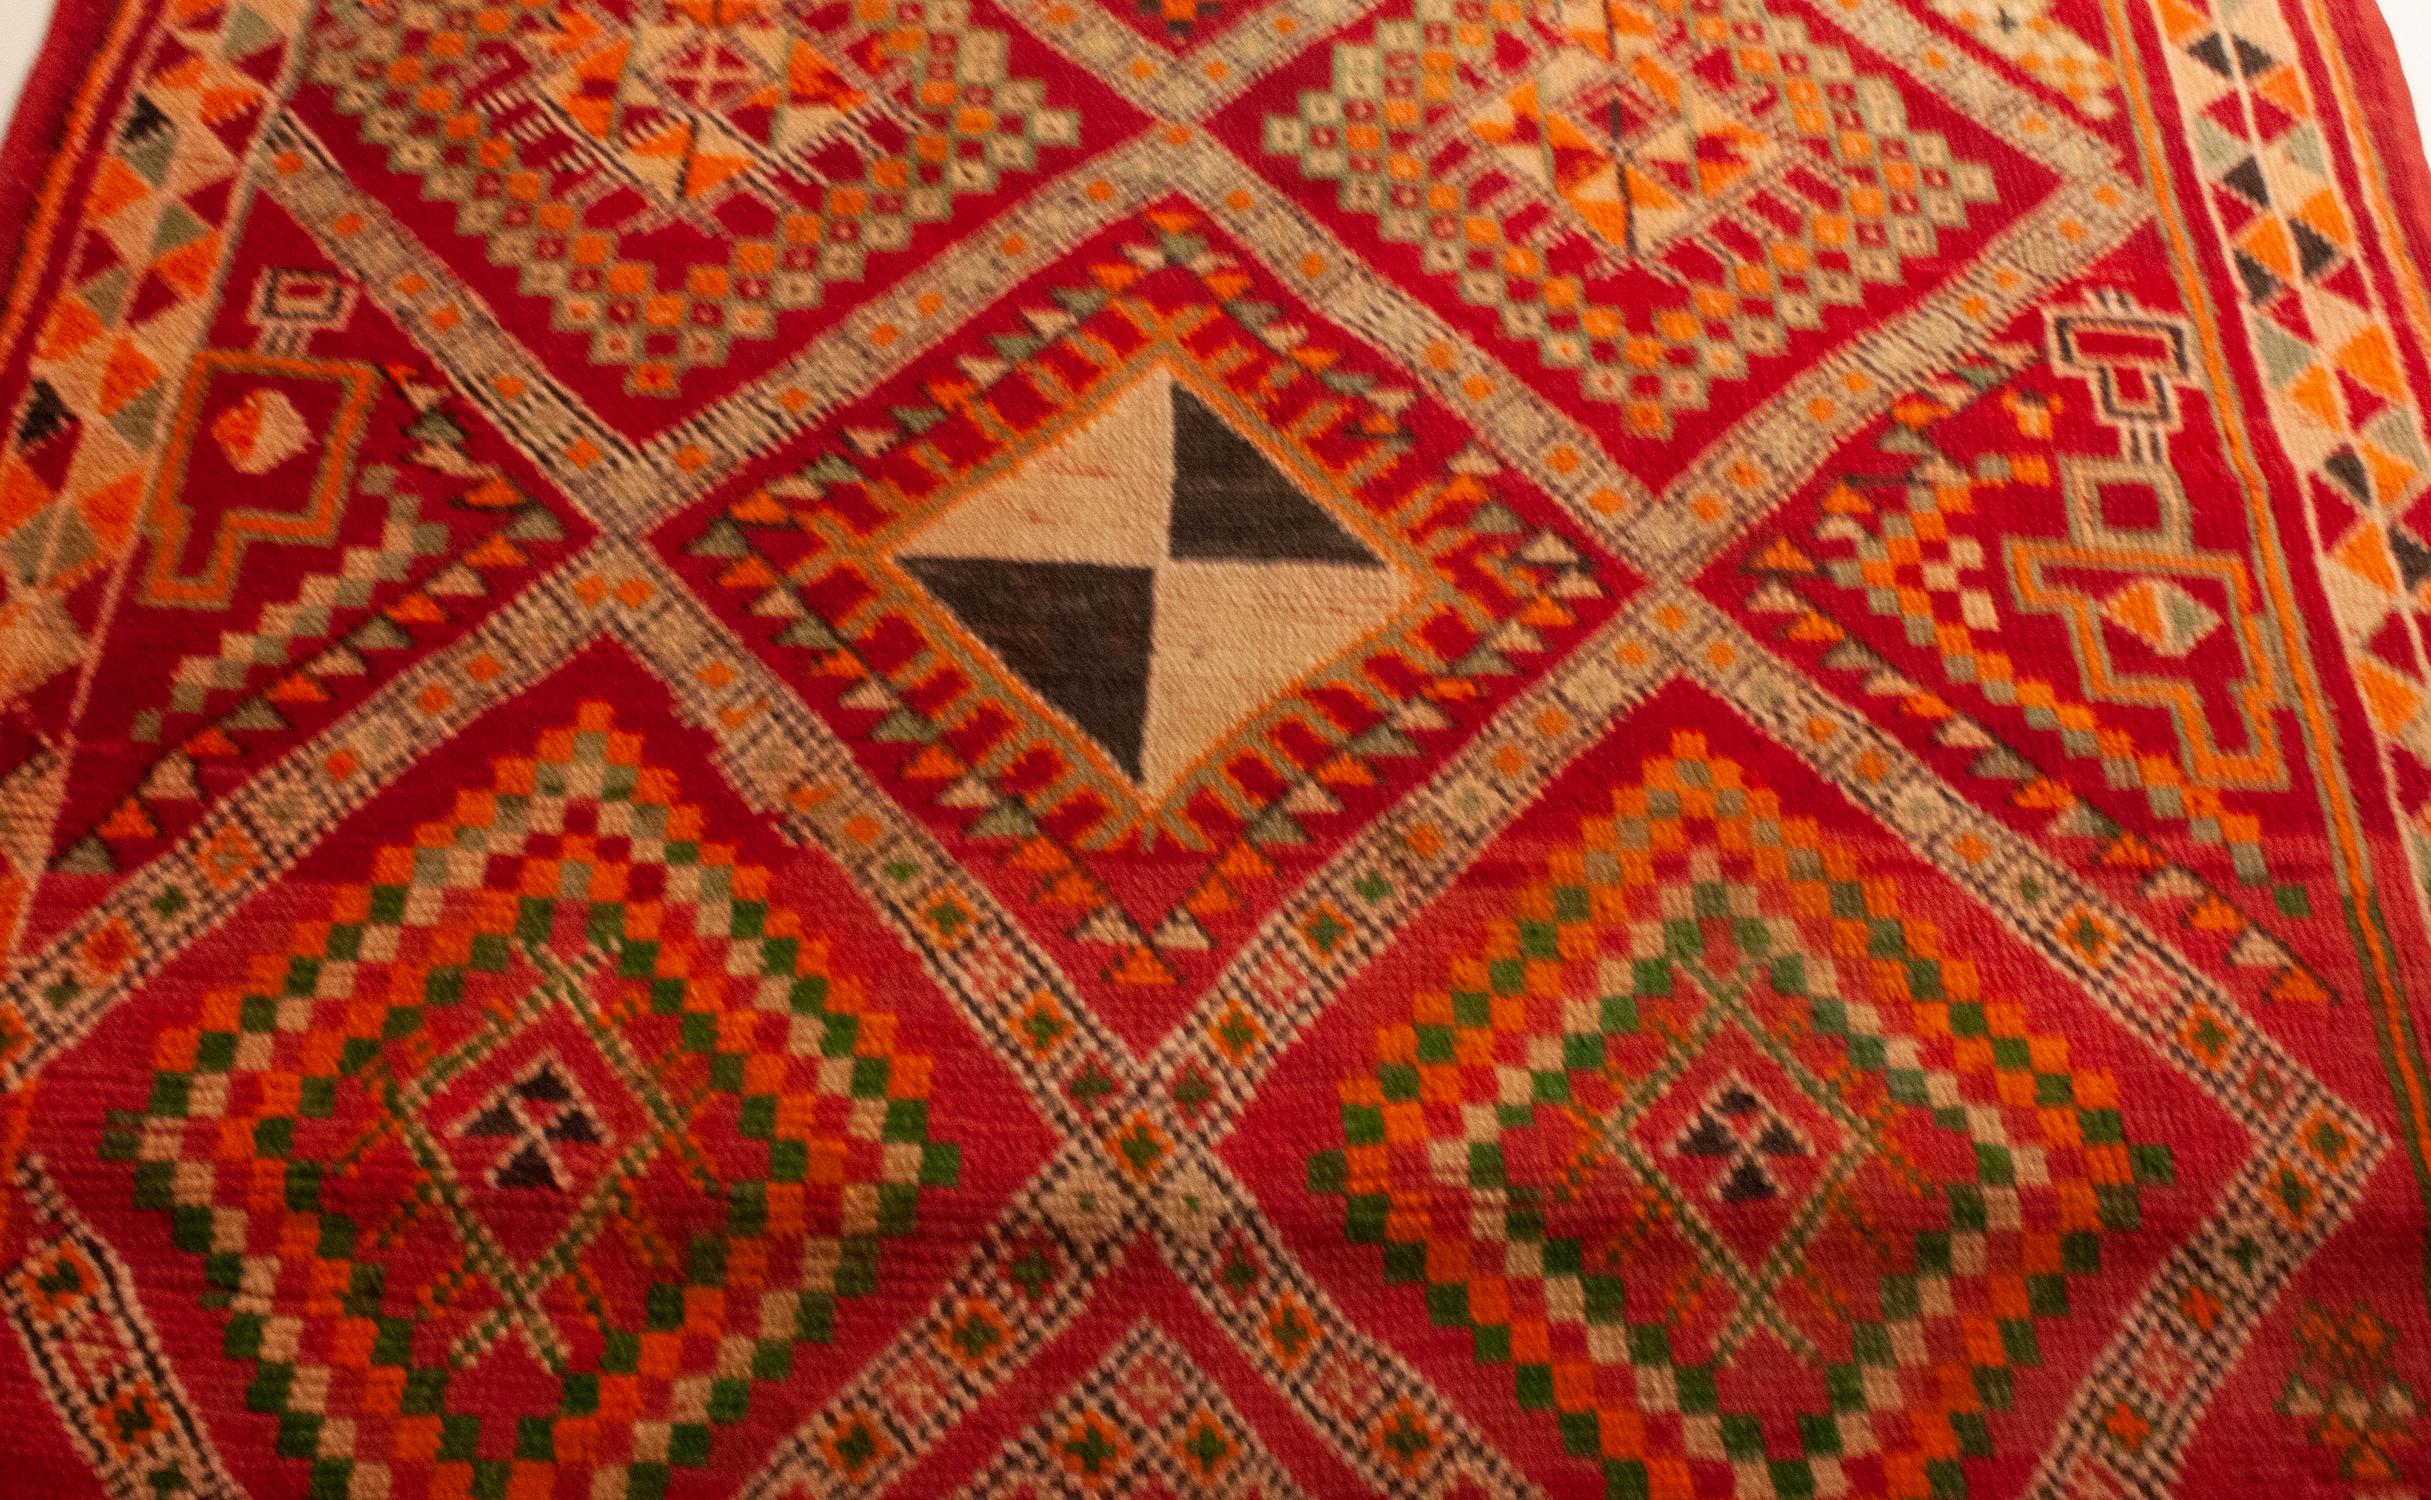 Vieux tapis marocain coloré
Belle couleur et beau dessin.